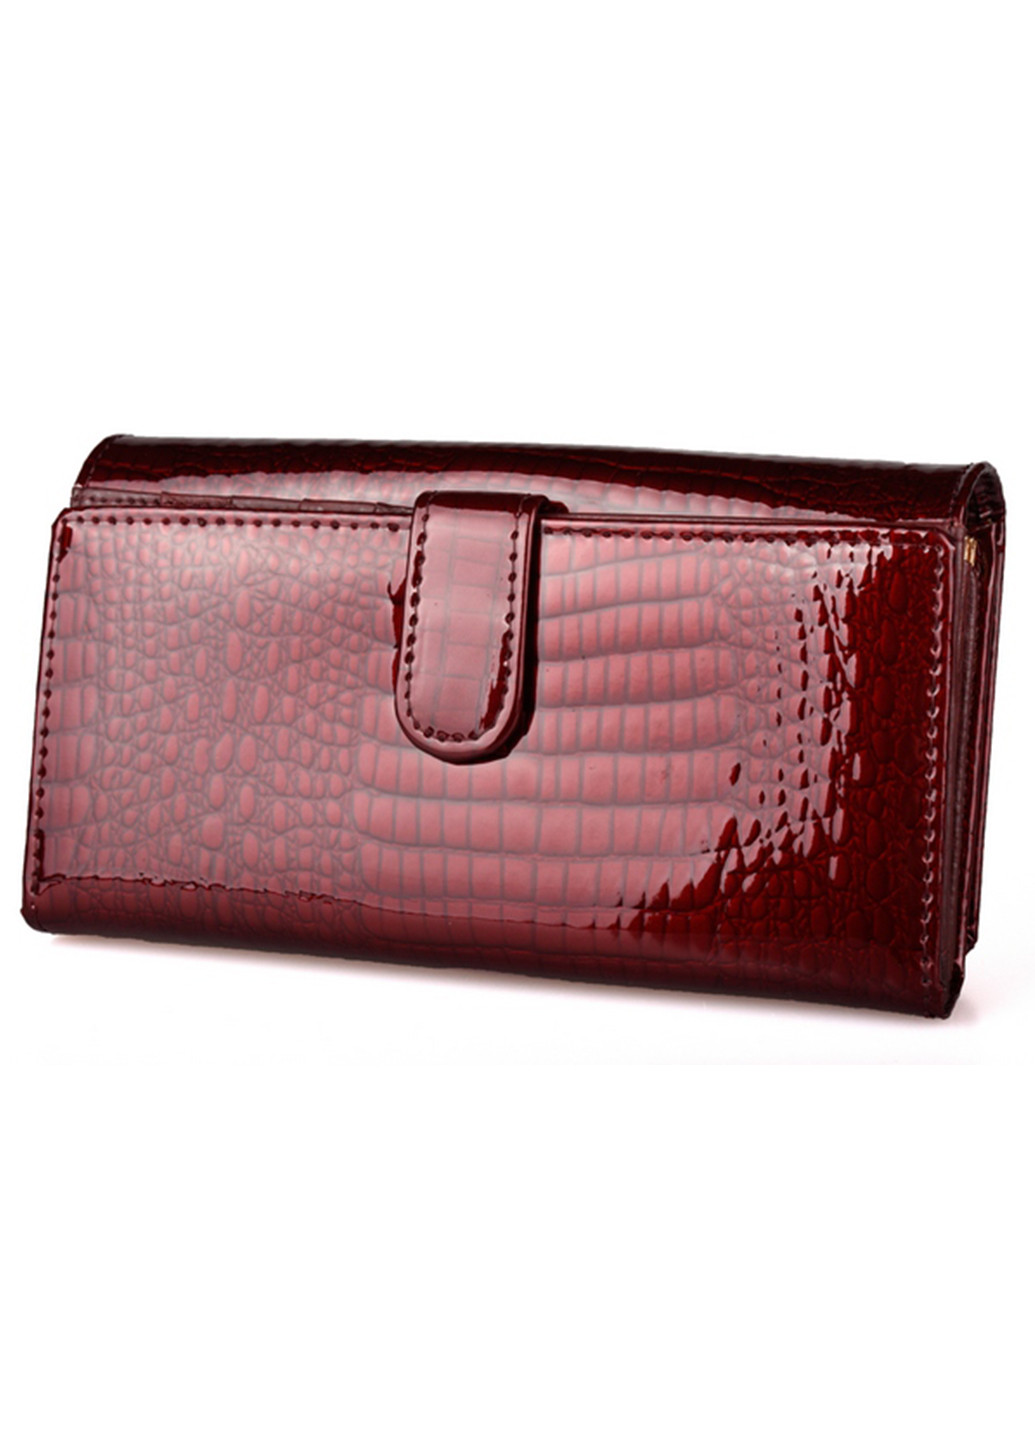 Жіночий шкіряний гаманець з візитницею ST s9001a (277359155)